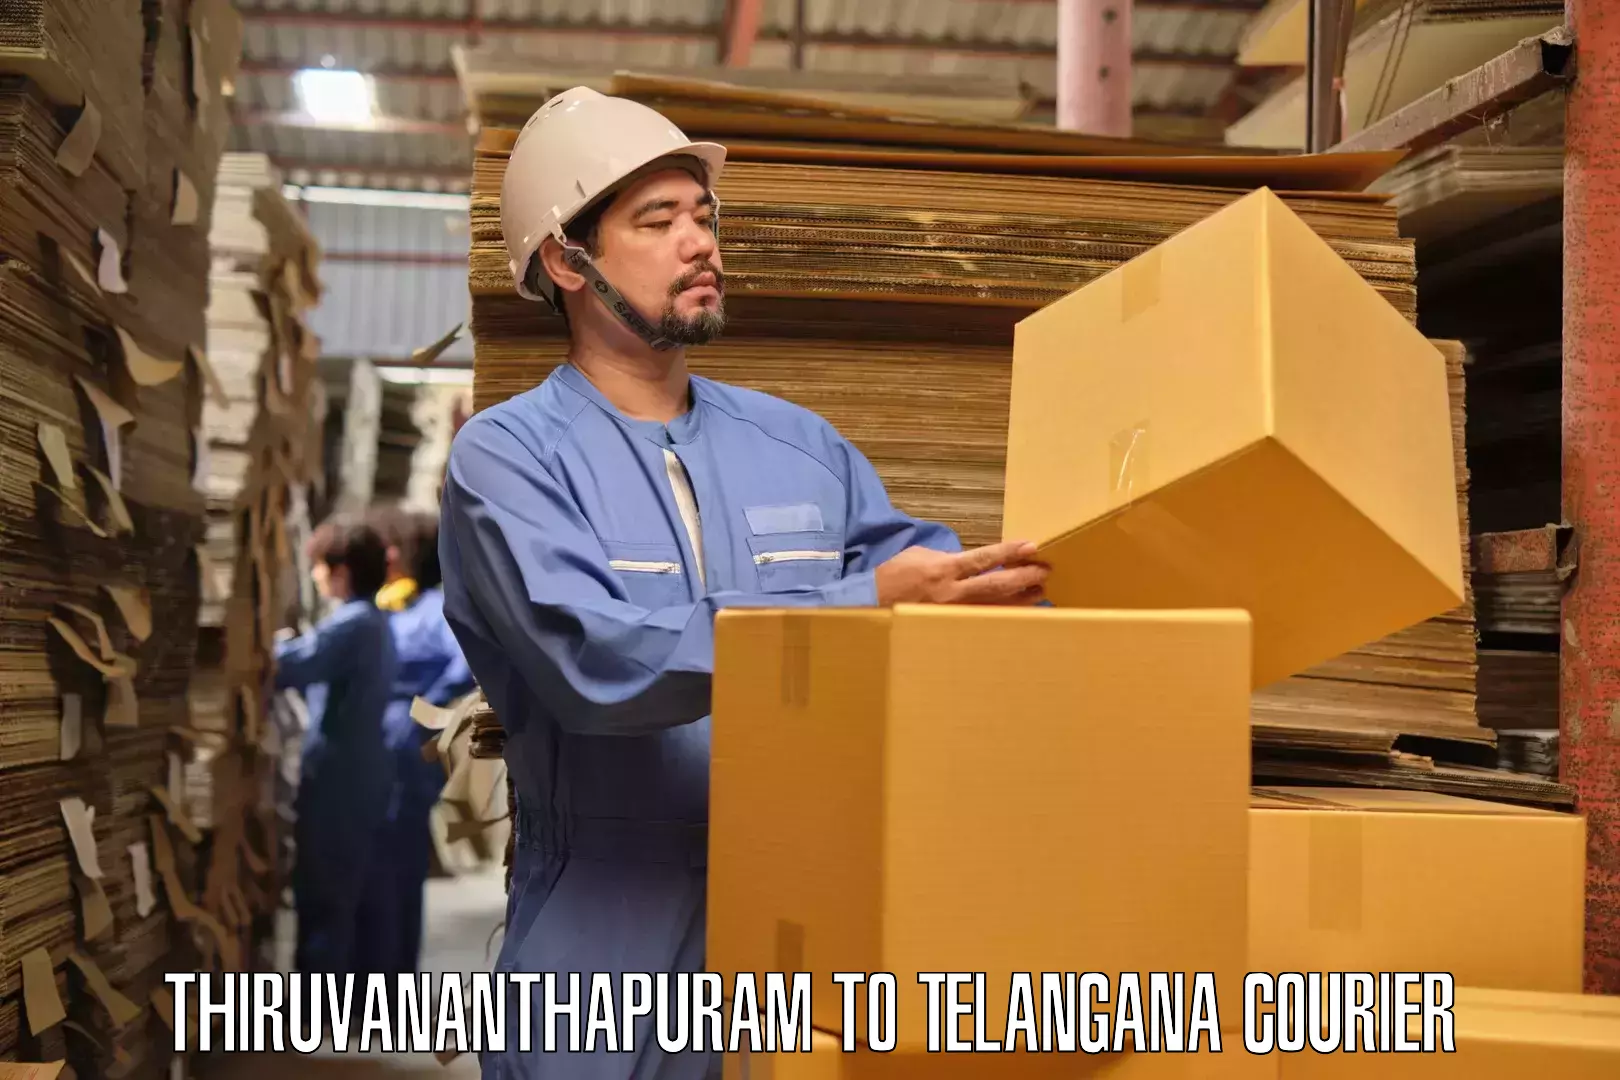 Furniture transport specialists Thiruvananthapuram to Telangana